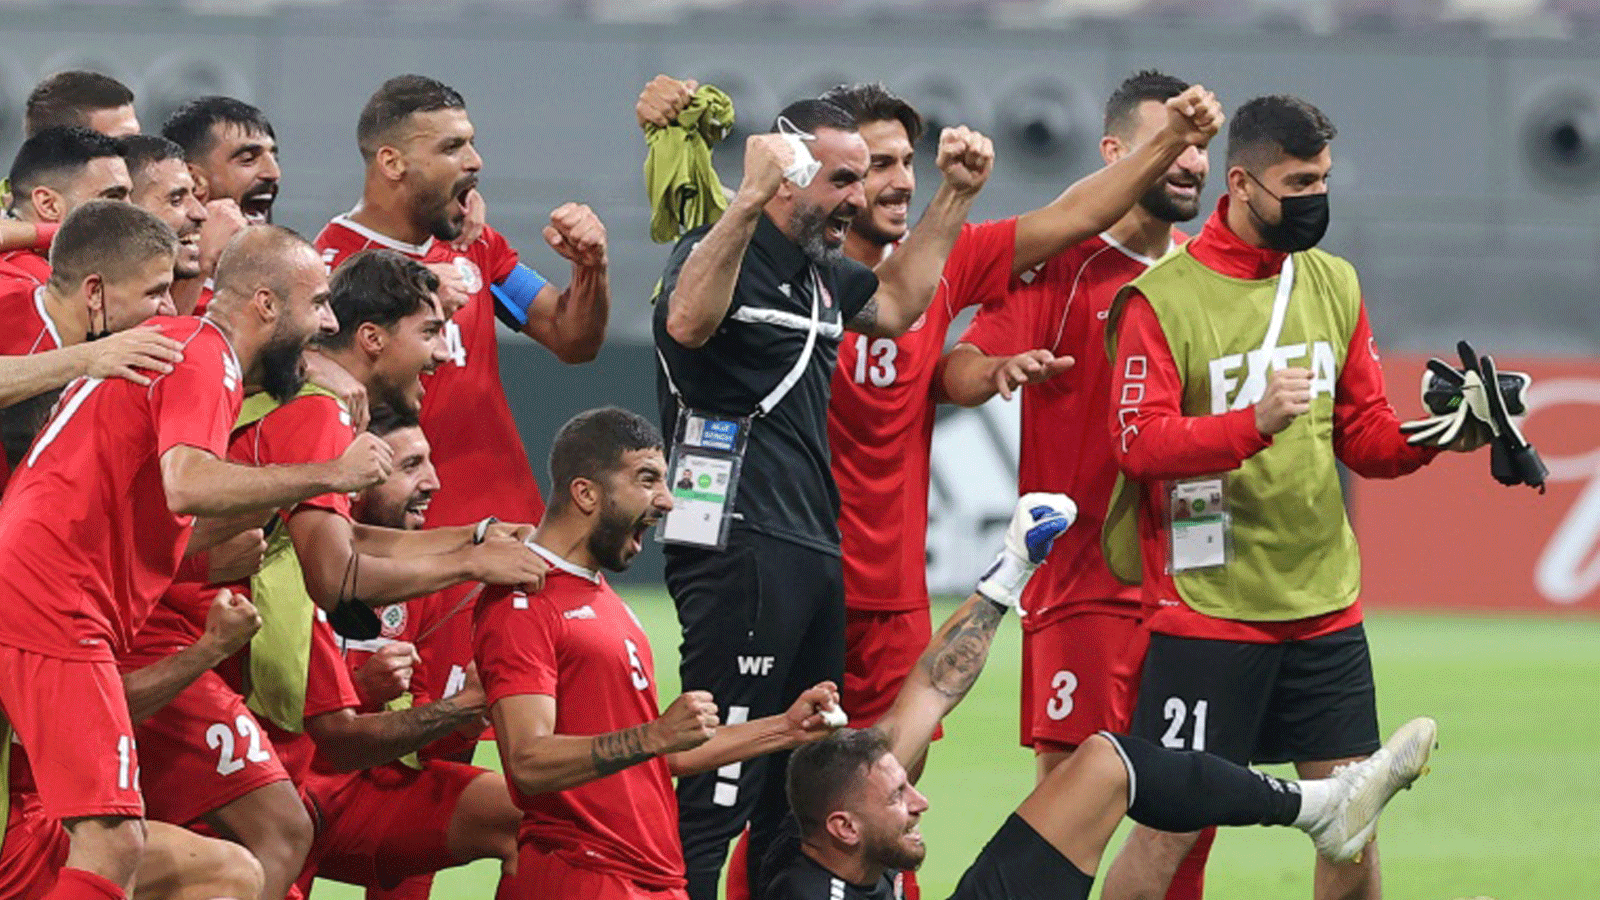 لاعبو لبنان يحتفلون بالتأهل إلى كأس العرب 2021 في كرة القدم بعد الفوز على دجيبوتي في الدوحة في 23 حزيران/يونيو 2021